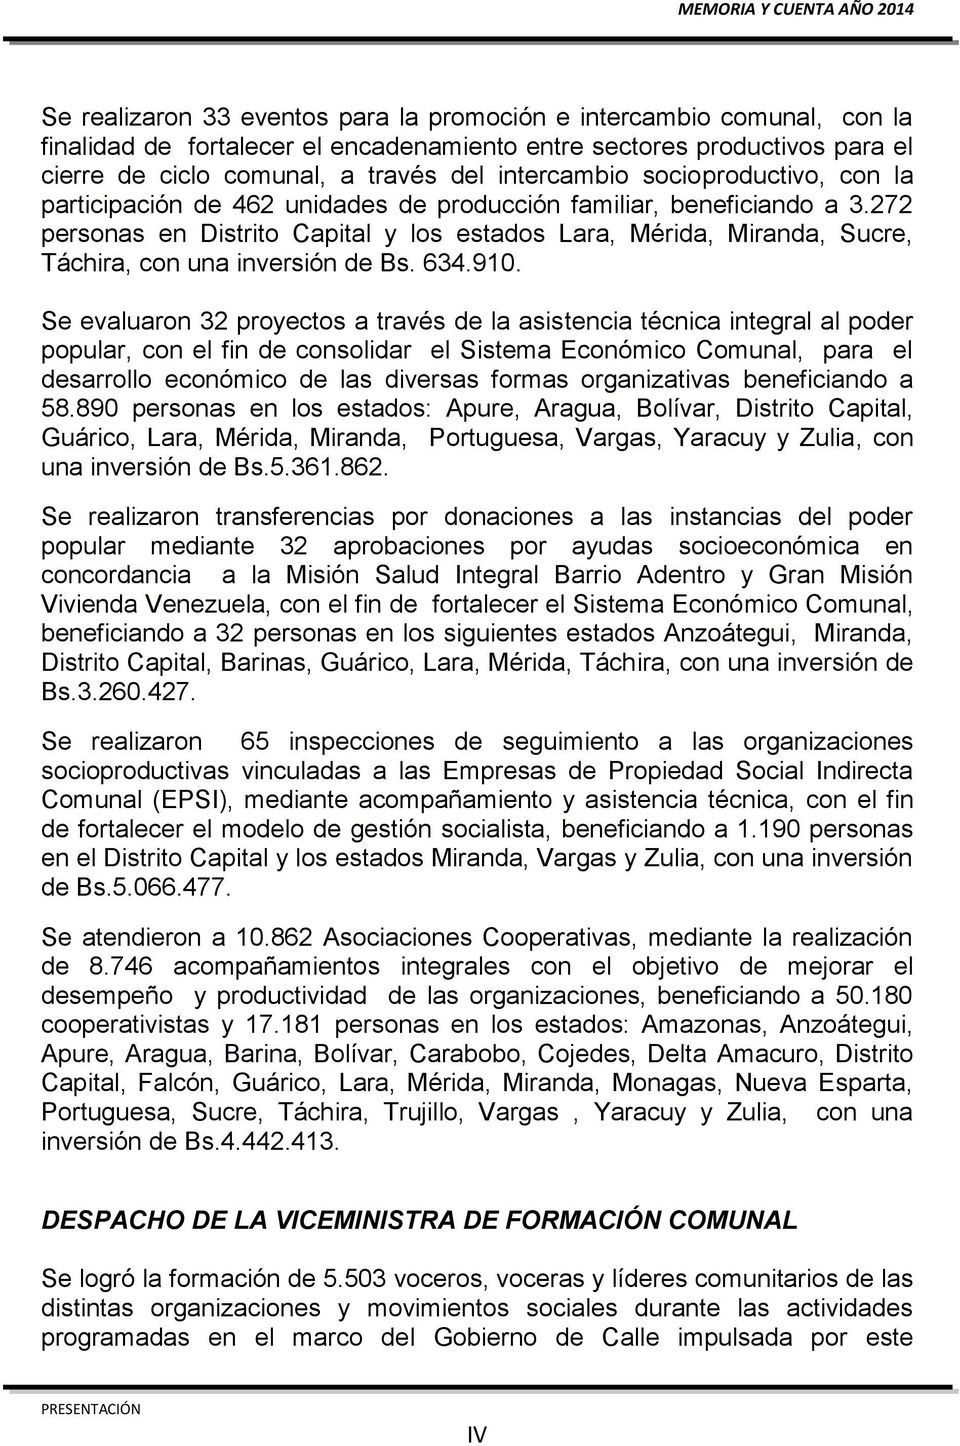 272 personas en Distrito Capital y los estados Lara, Mérida, Miranda, Sucre, Táchira, con una inversión de Bs. 634.910.